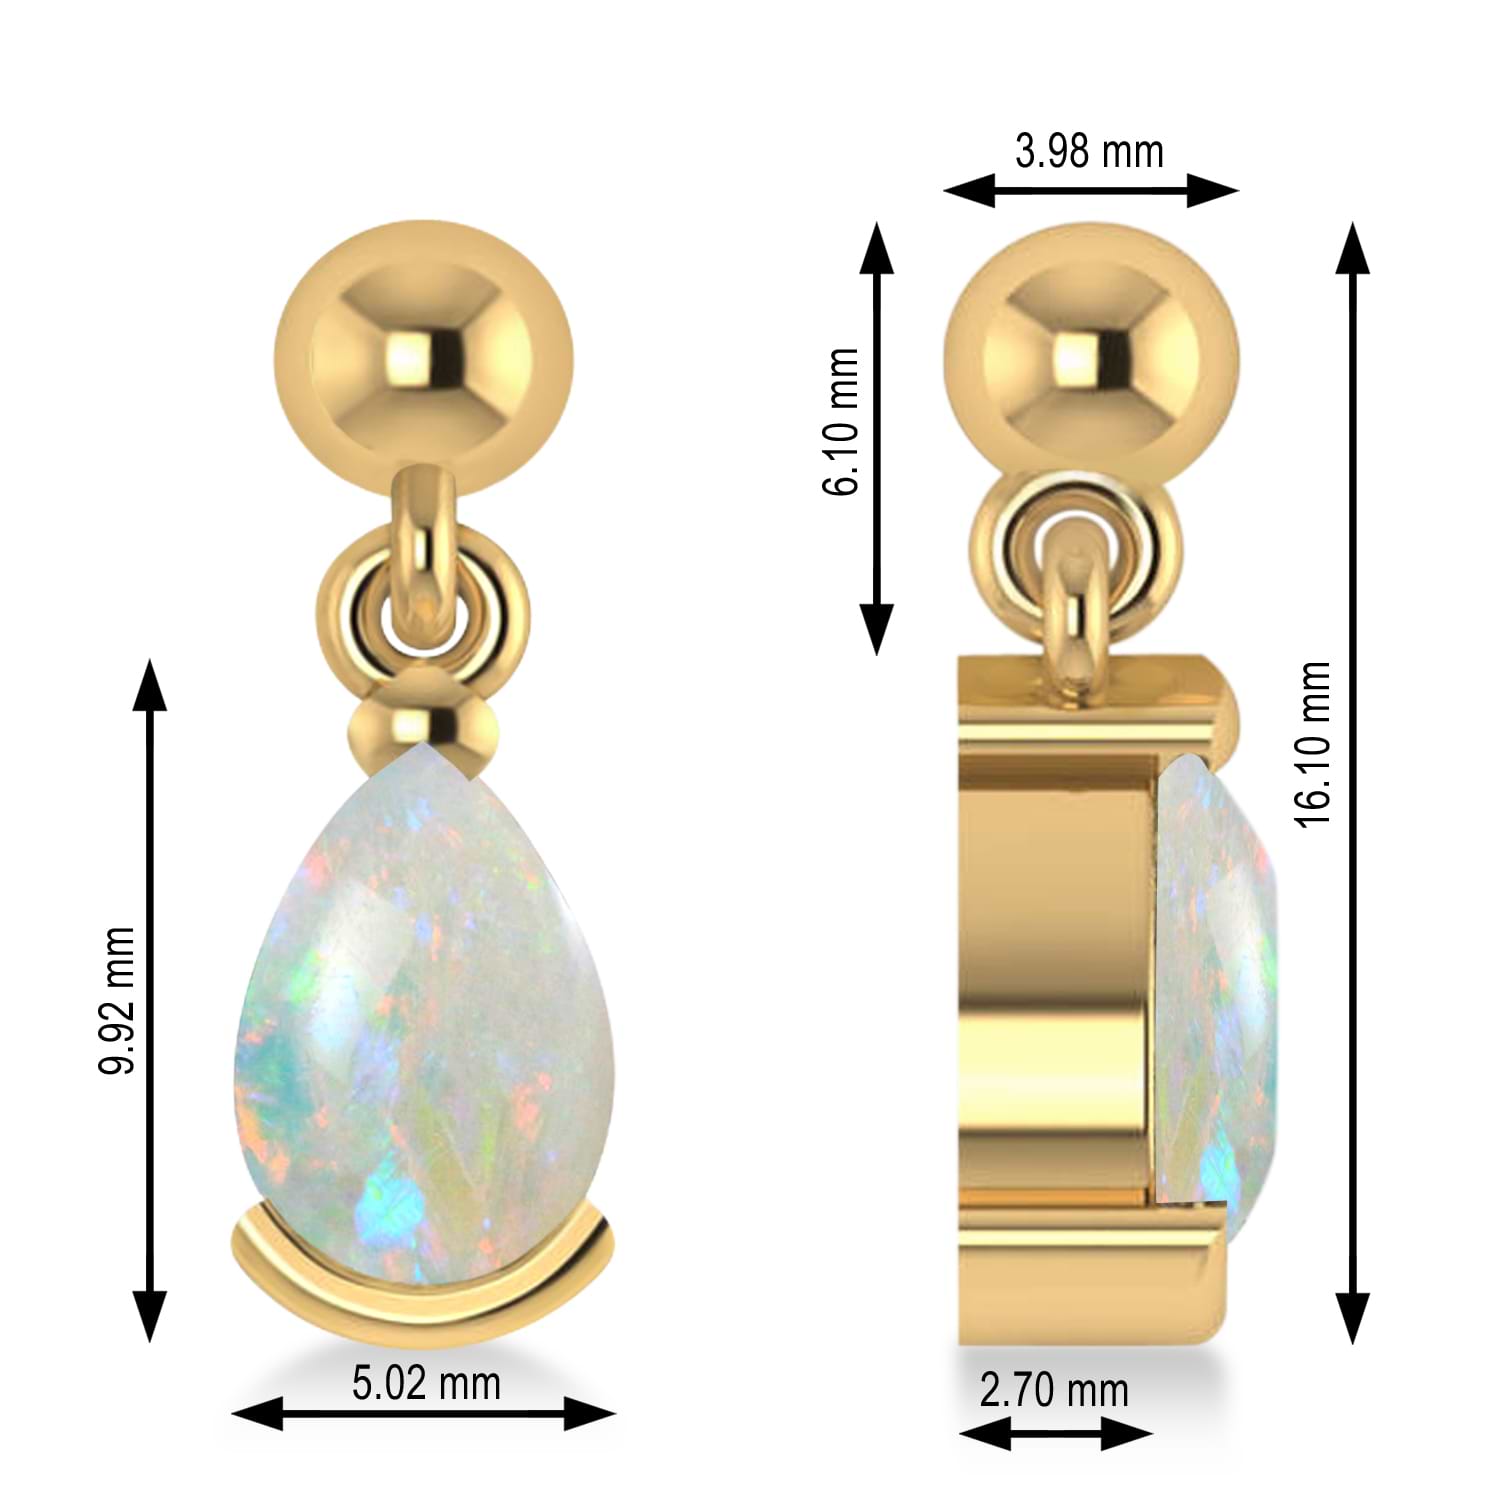 Opal Dangling Pear Earrings 14k Yellow Gold (2.00ct)